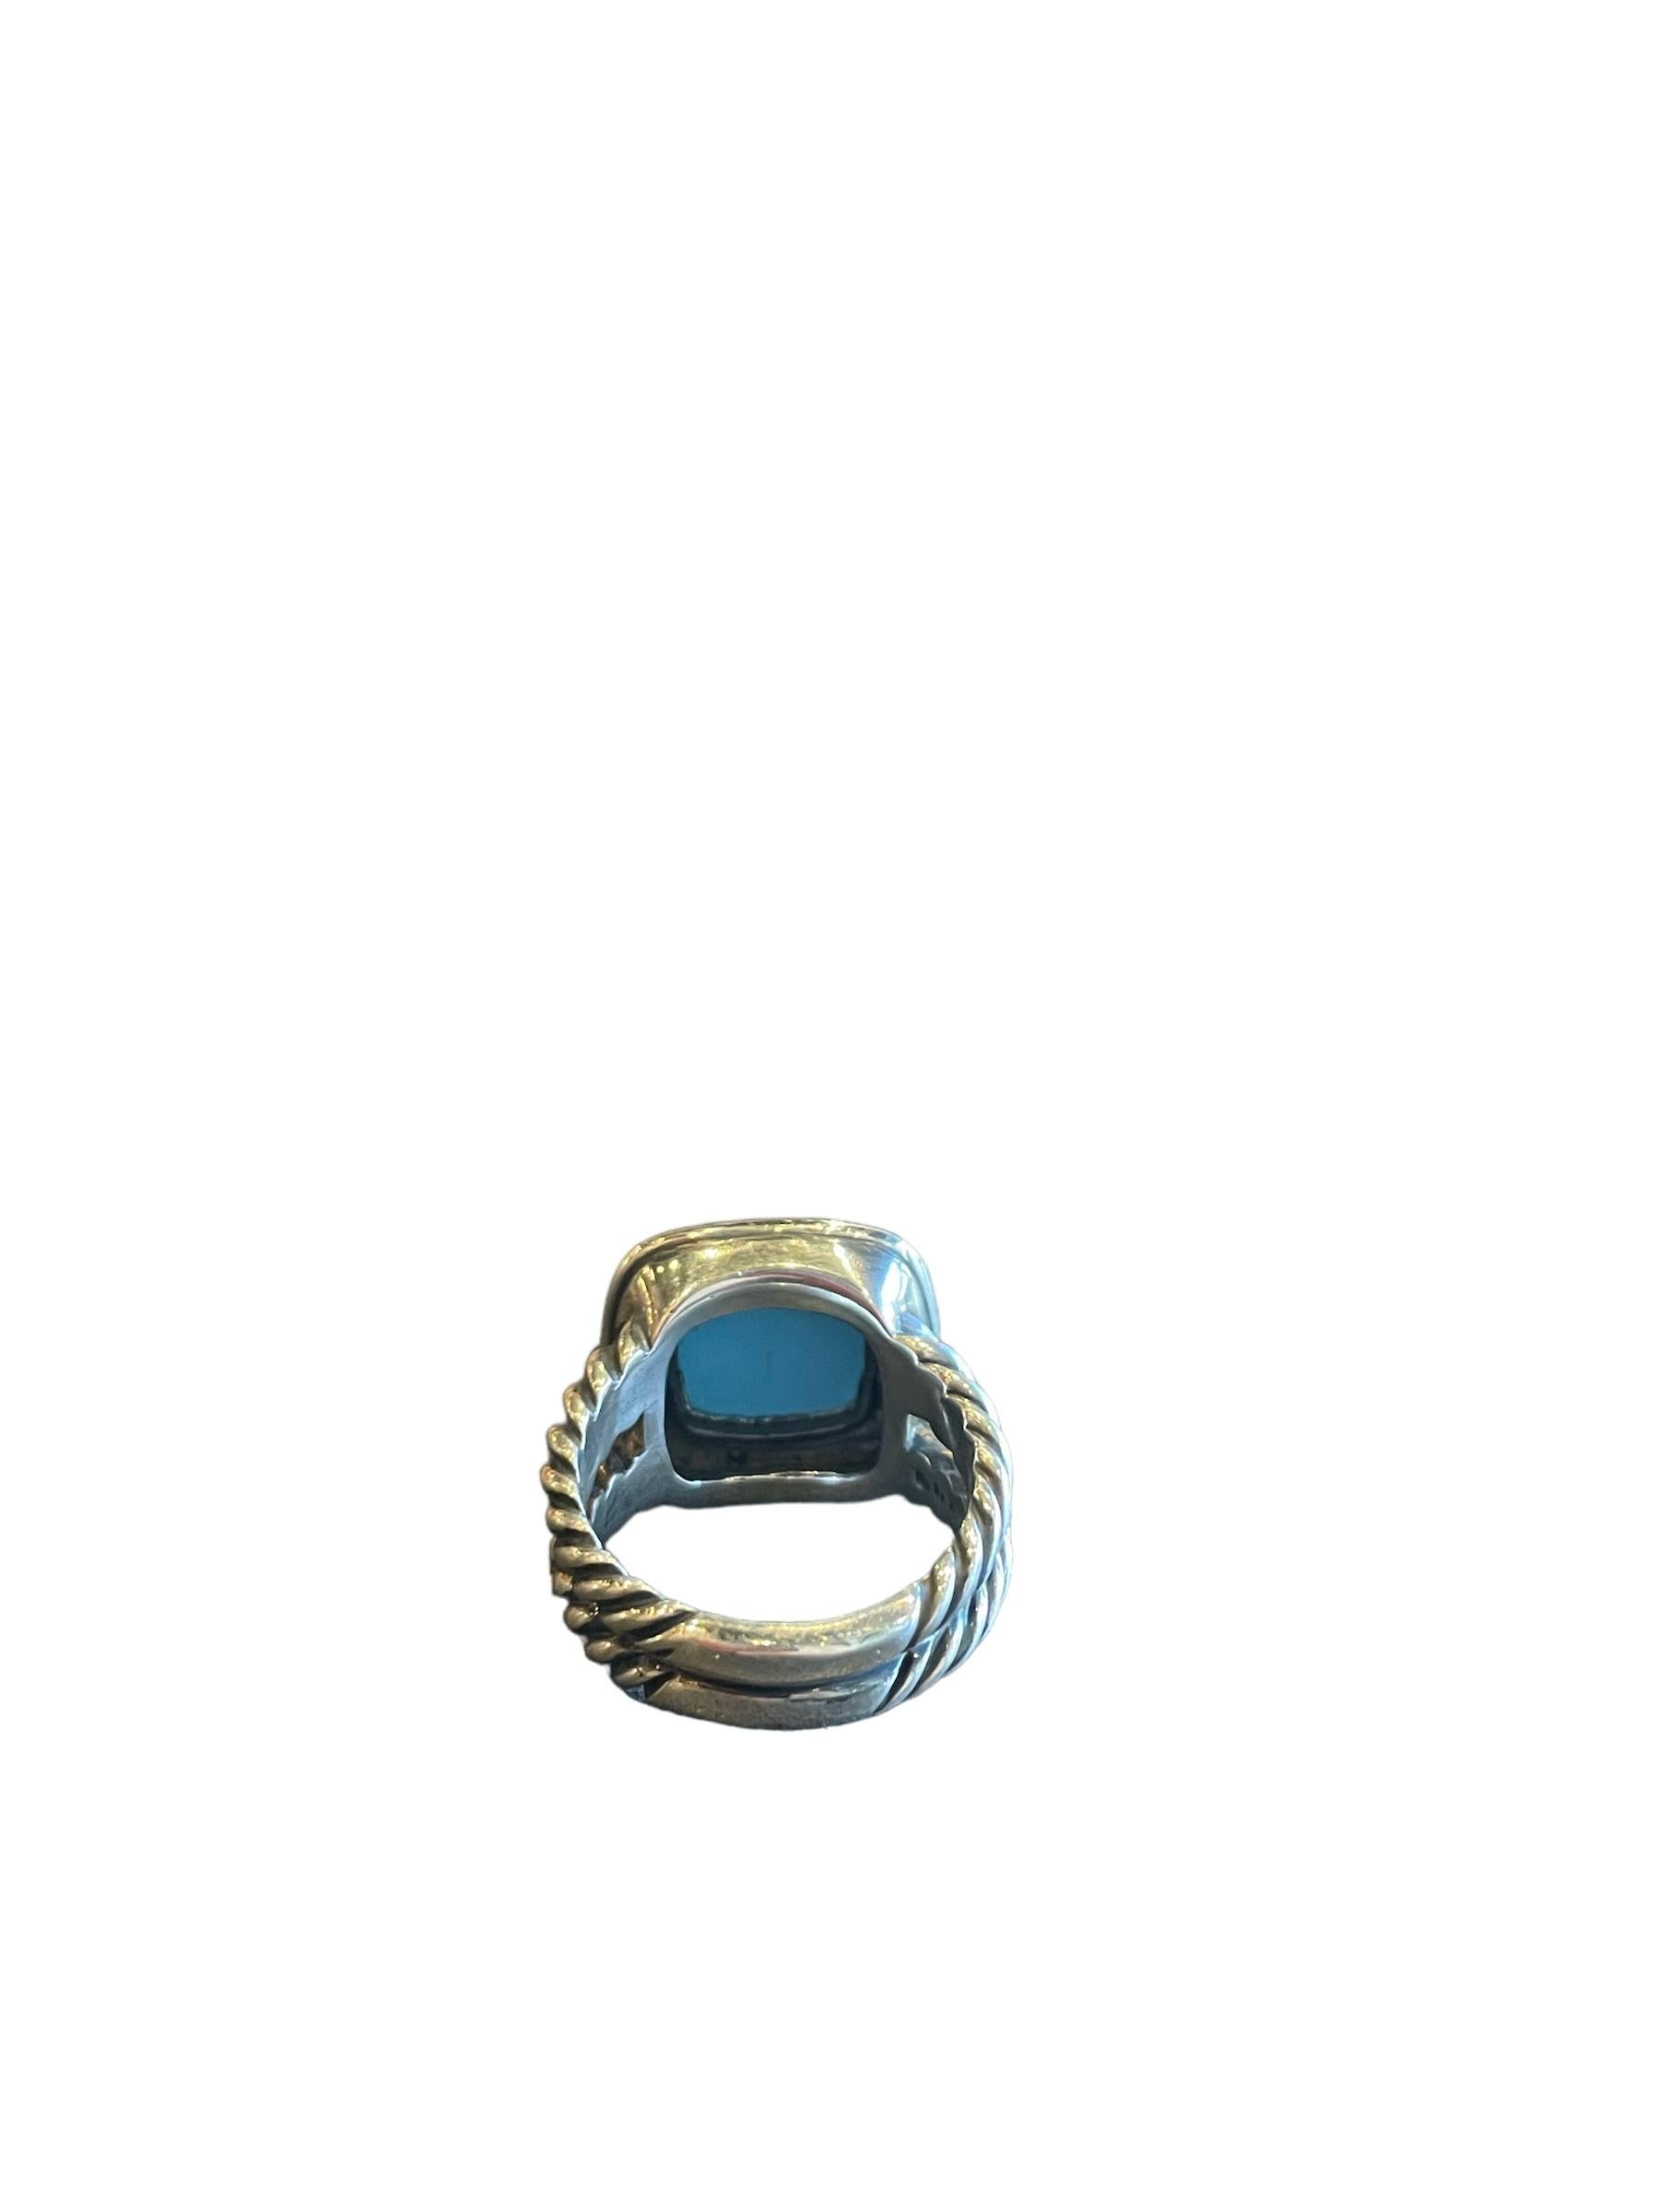 david yurman aquamarine ring